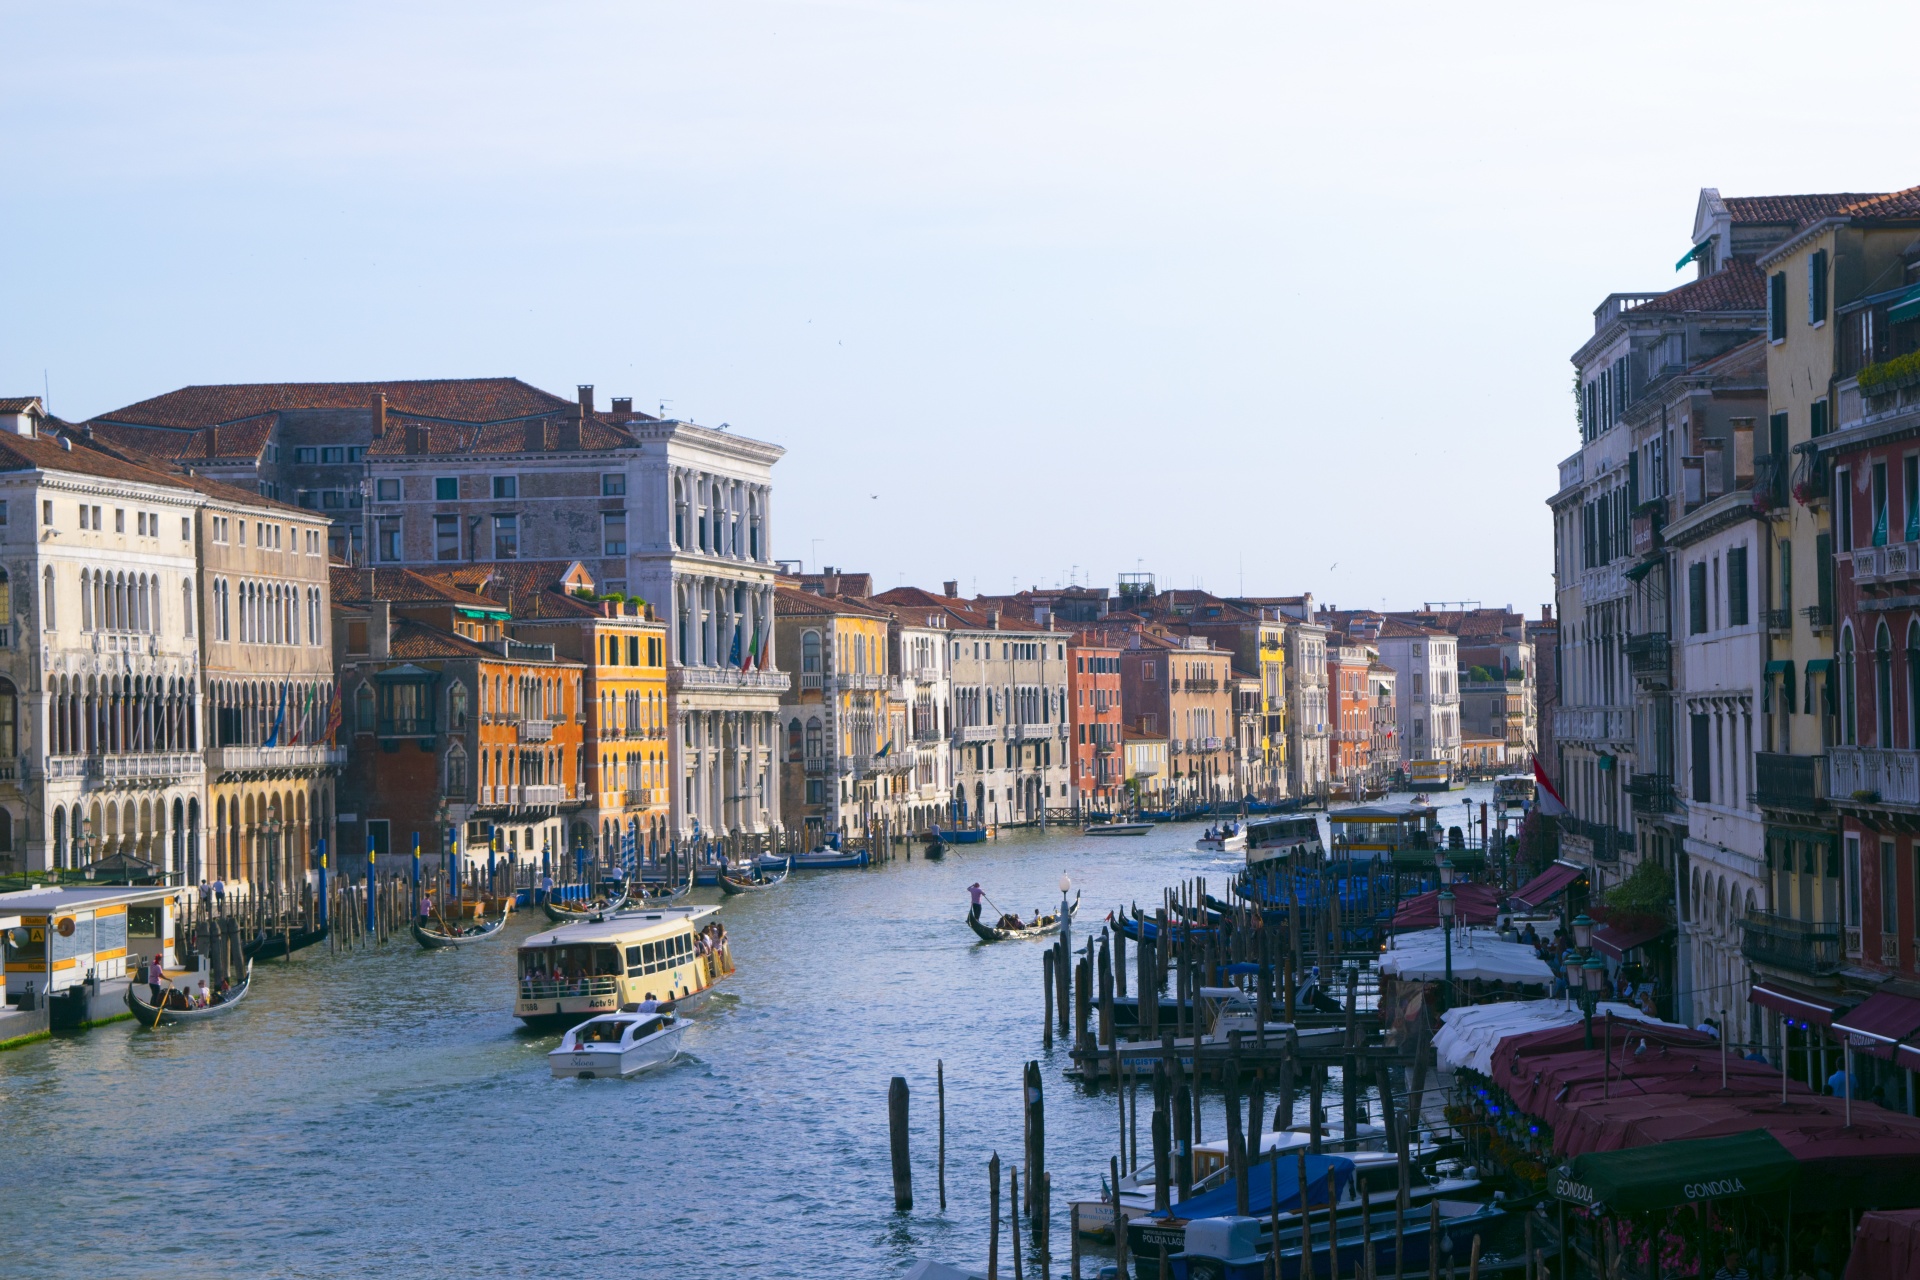 Venice Image 1186